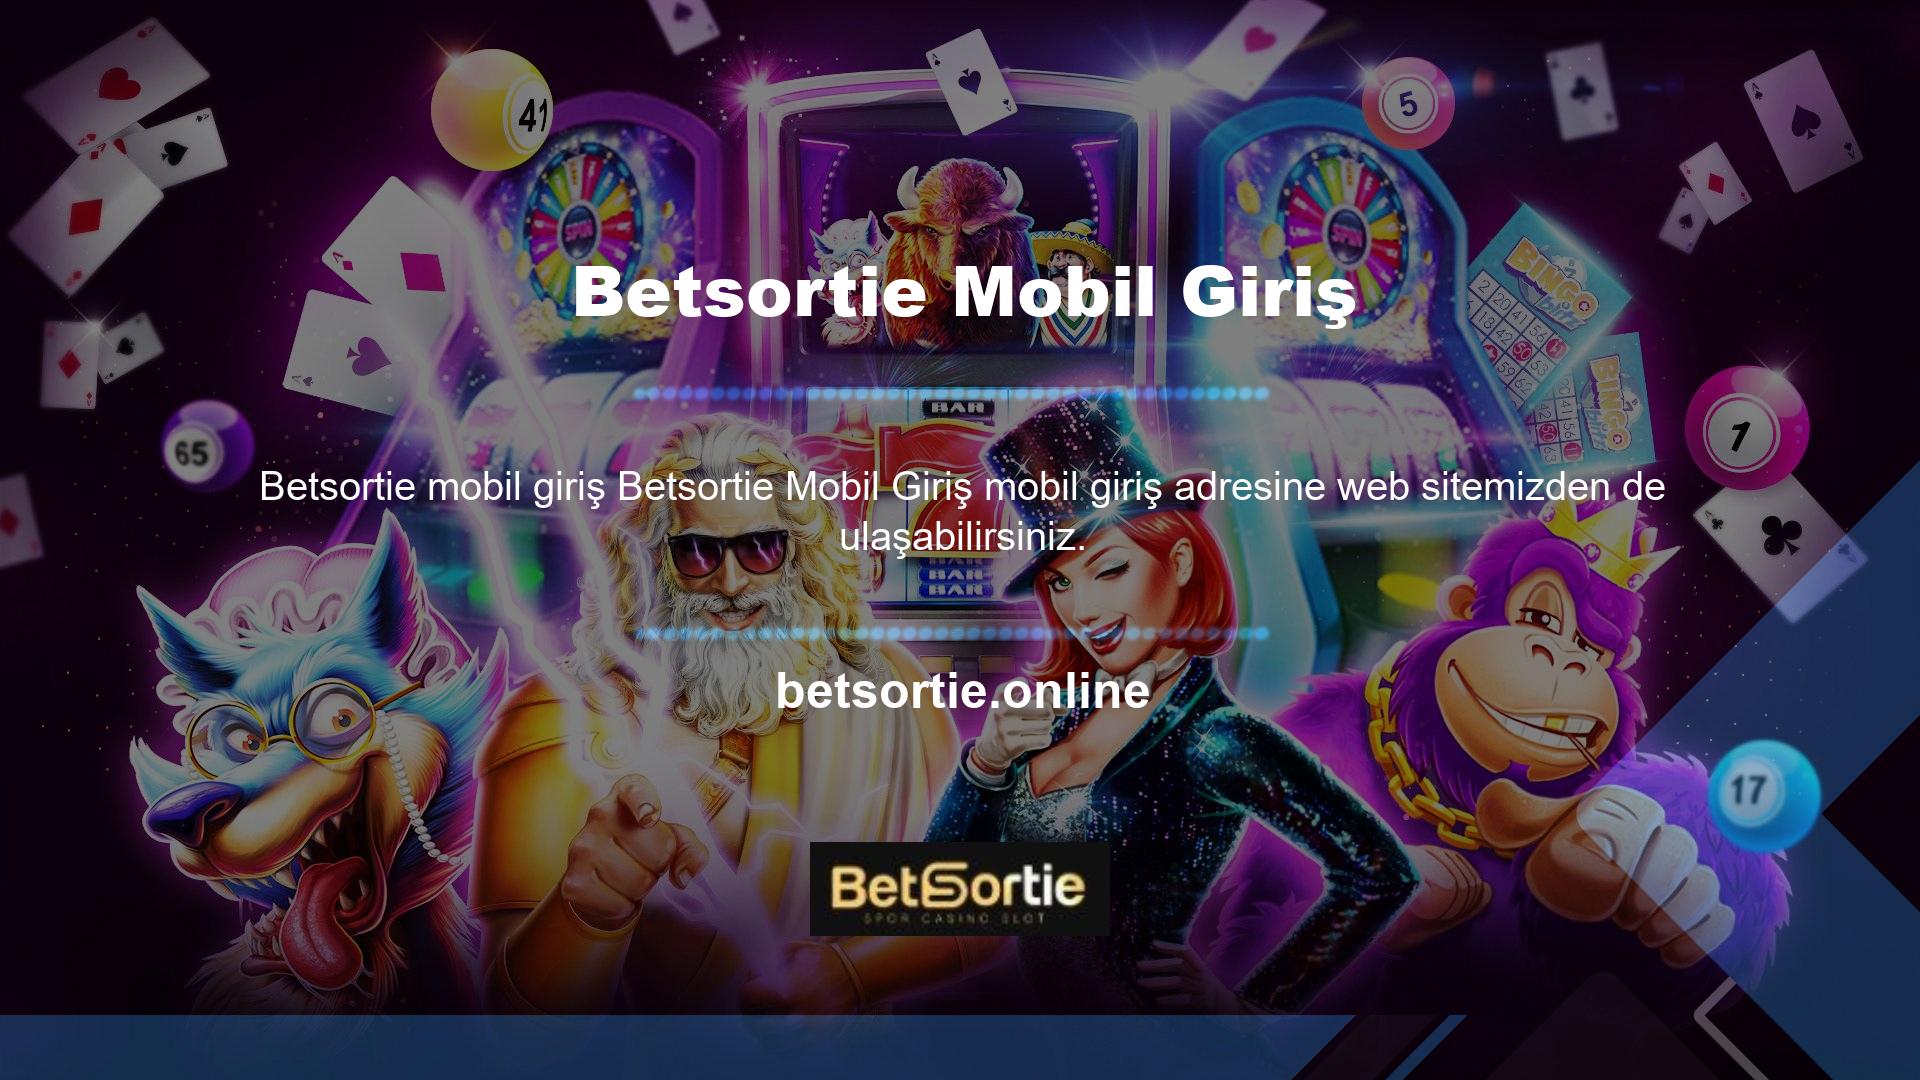 Cep telefonunuzdan Betsortie TV uygulamasını açıp maçı canlı izlemek isterseniz Android veya IOS işletim sisteminizden yapabilirsiniz